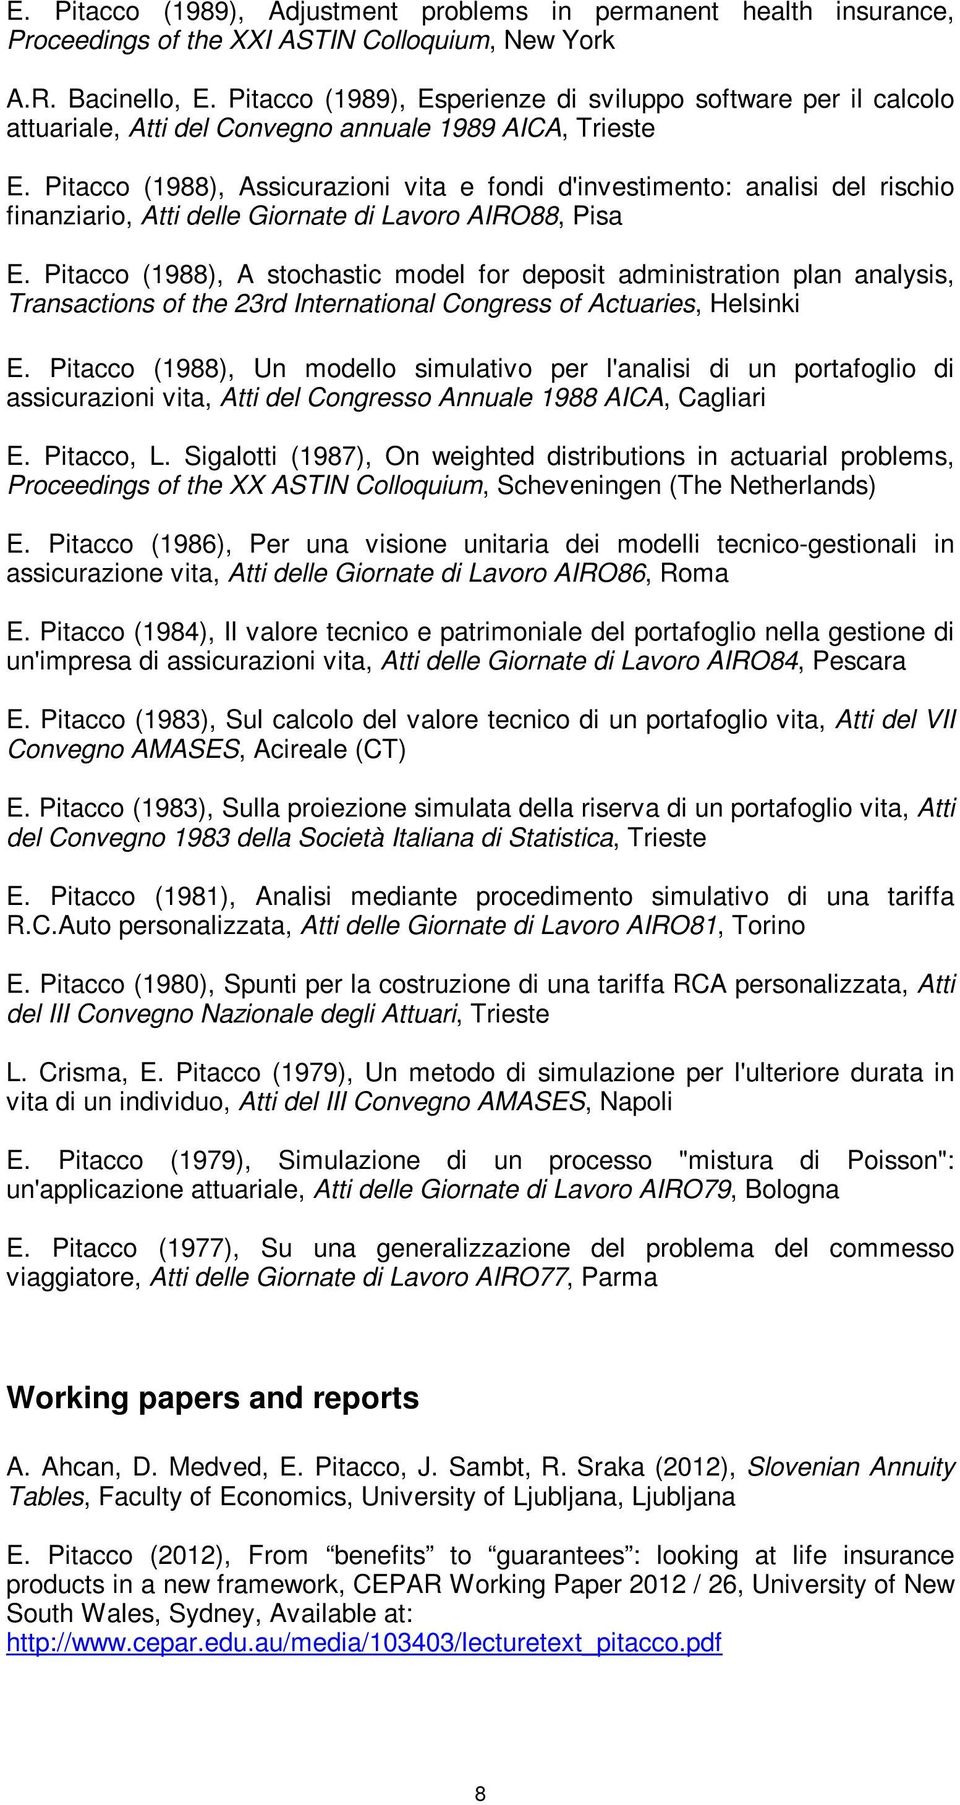 Pitacco (1988), Assicurazioni vita e fondi d'investimento: analisi del rischio finanziario, Atti delle Giornate di Lavoro AIRO88, Pisa E.